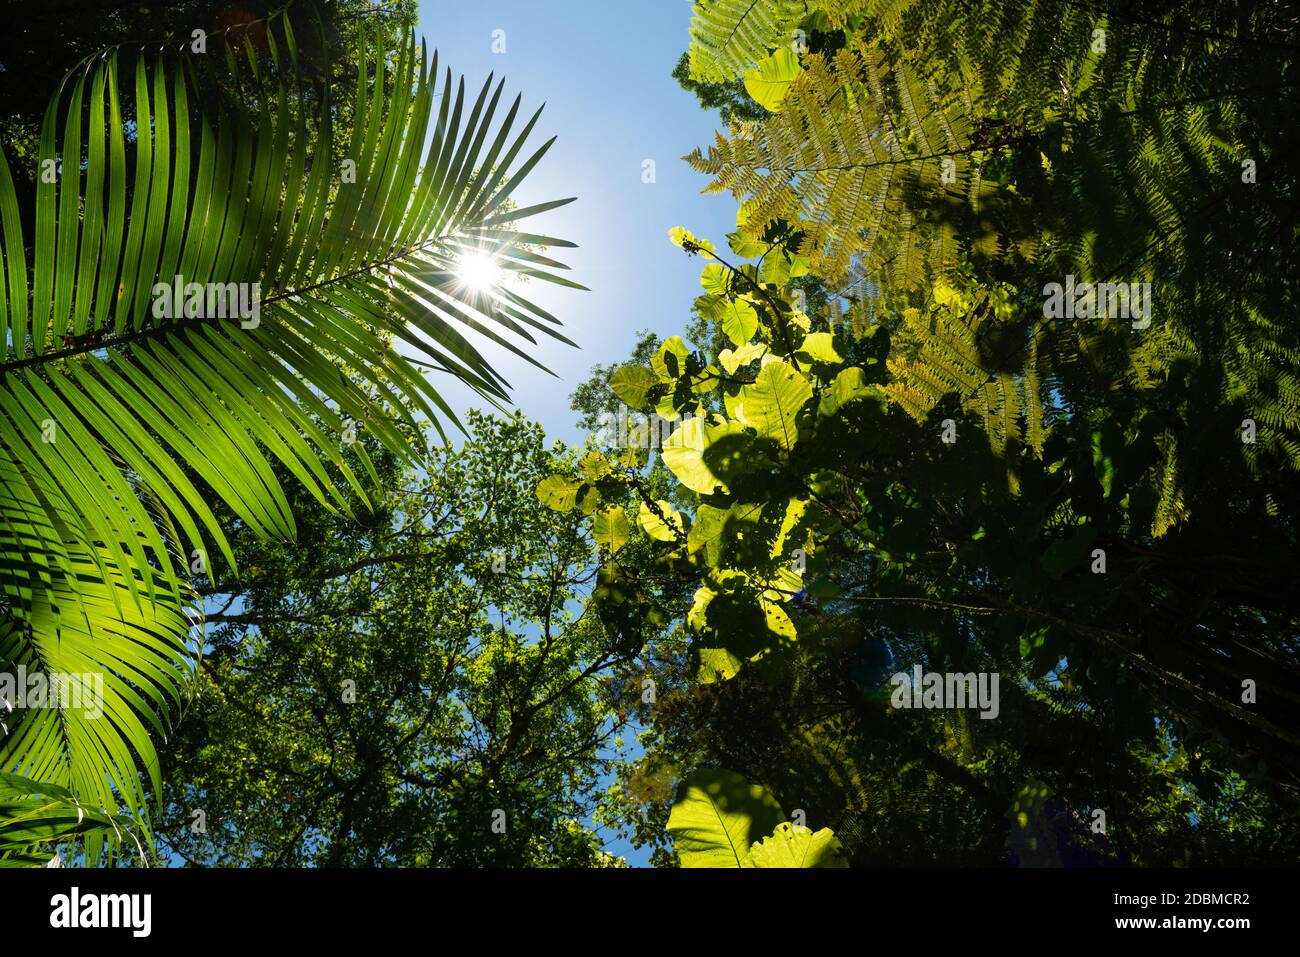 Atlantic Rainforest lush vegetation seen from inside the forest Stock Photo